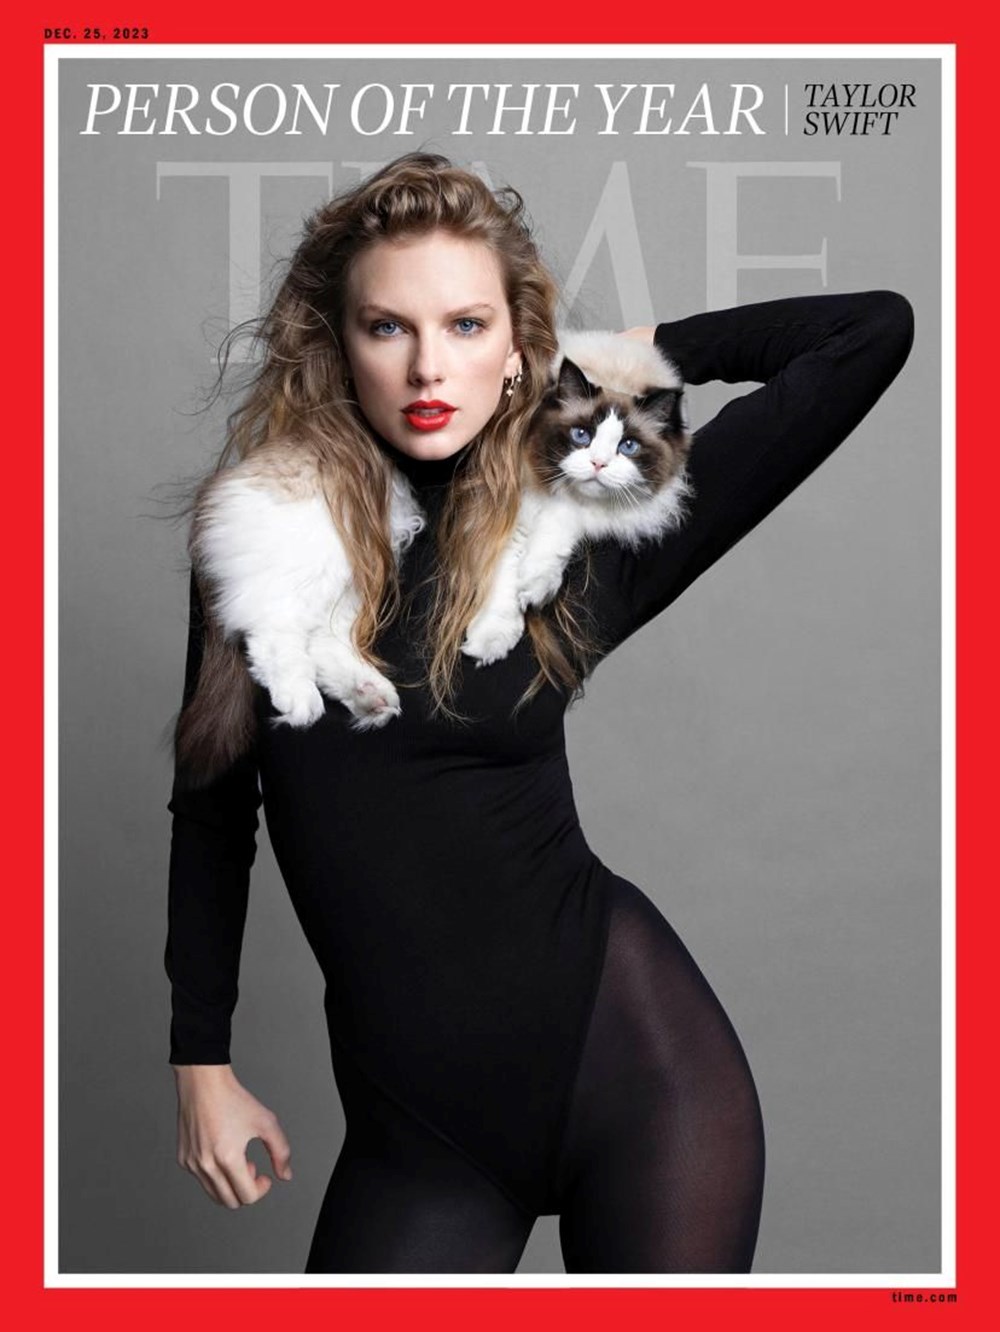 Time açıkladı: Taylor Swift Yılın Kişisi seçildi - 1